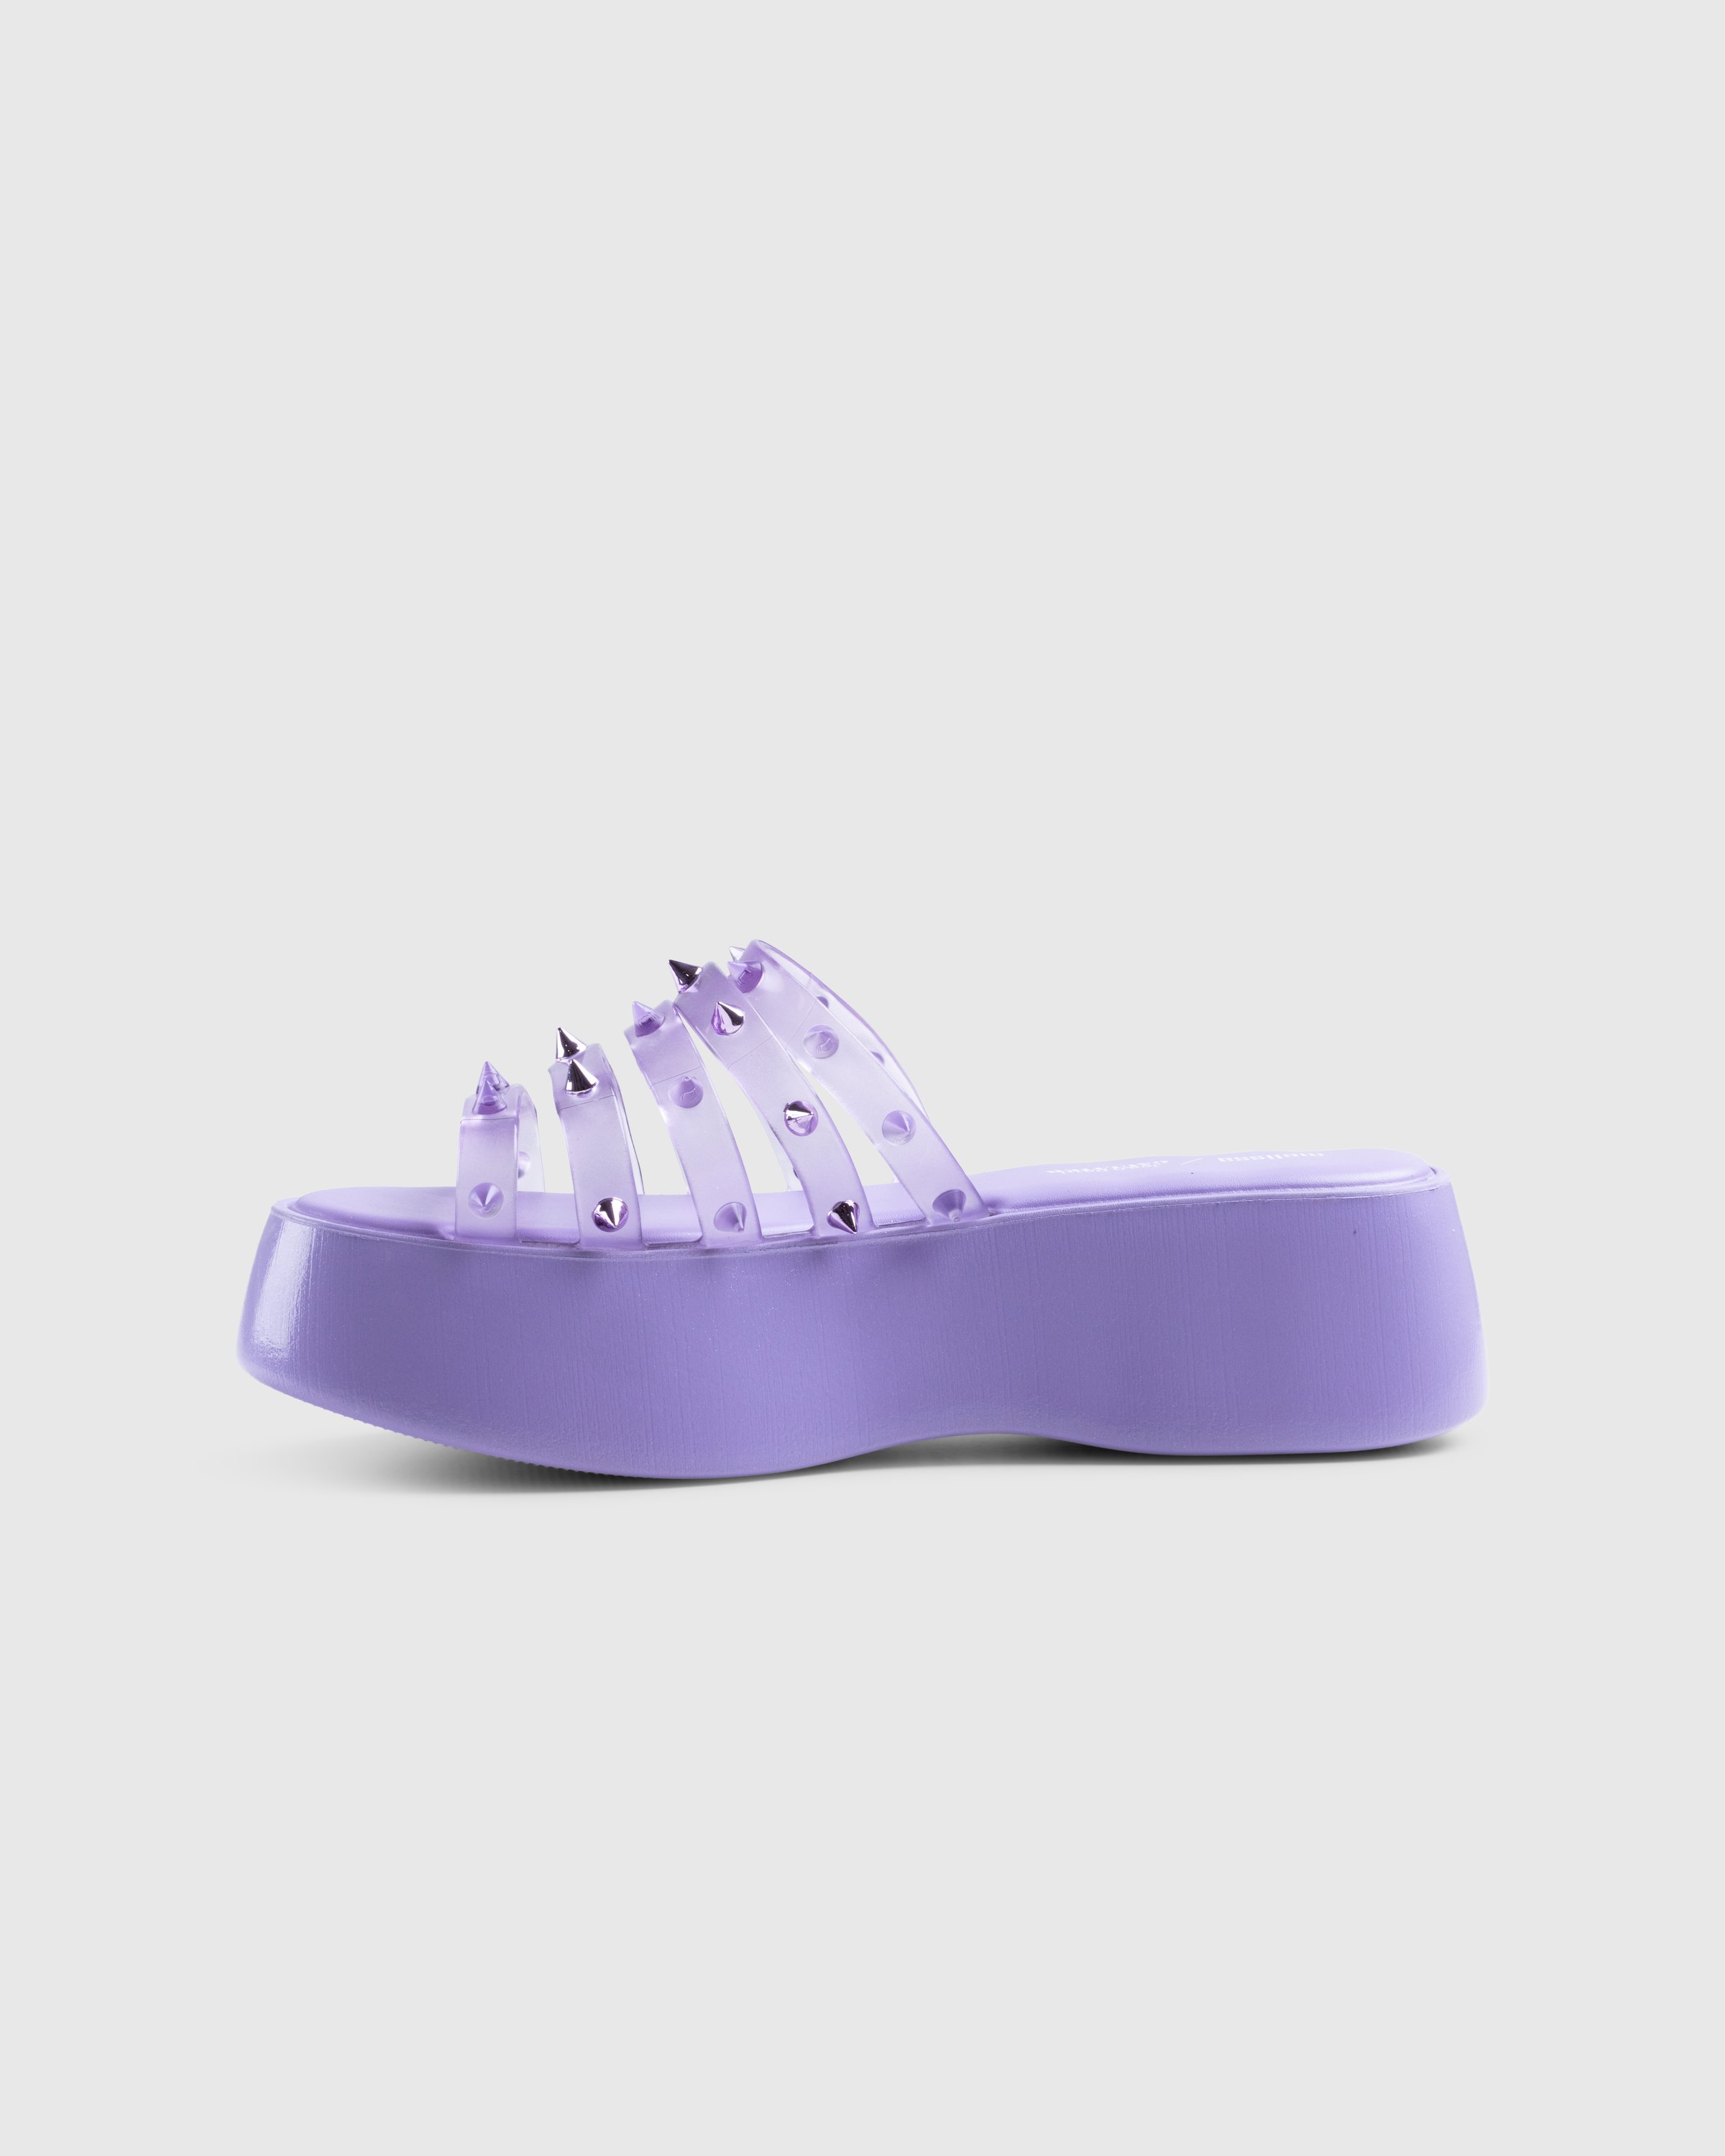 Jean Paul Gaultier x Melissa - Becky Punk Love Mule Purple - Footwear - Purple - Image 2